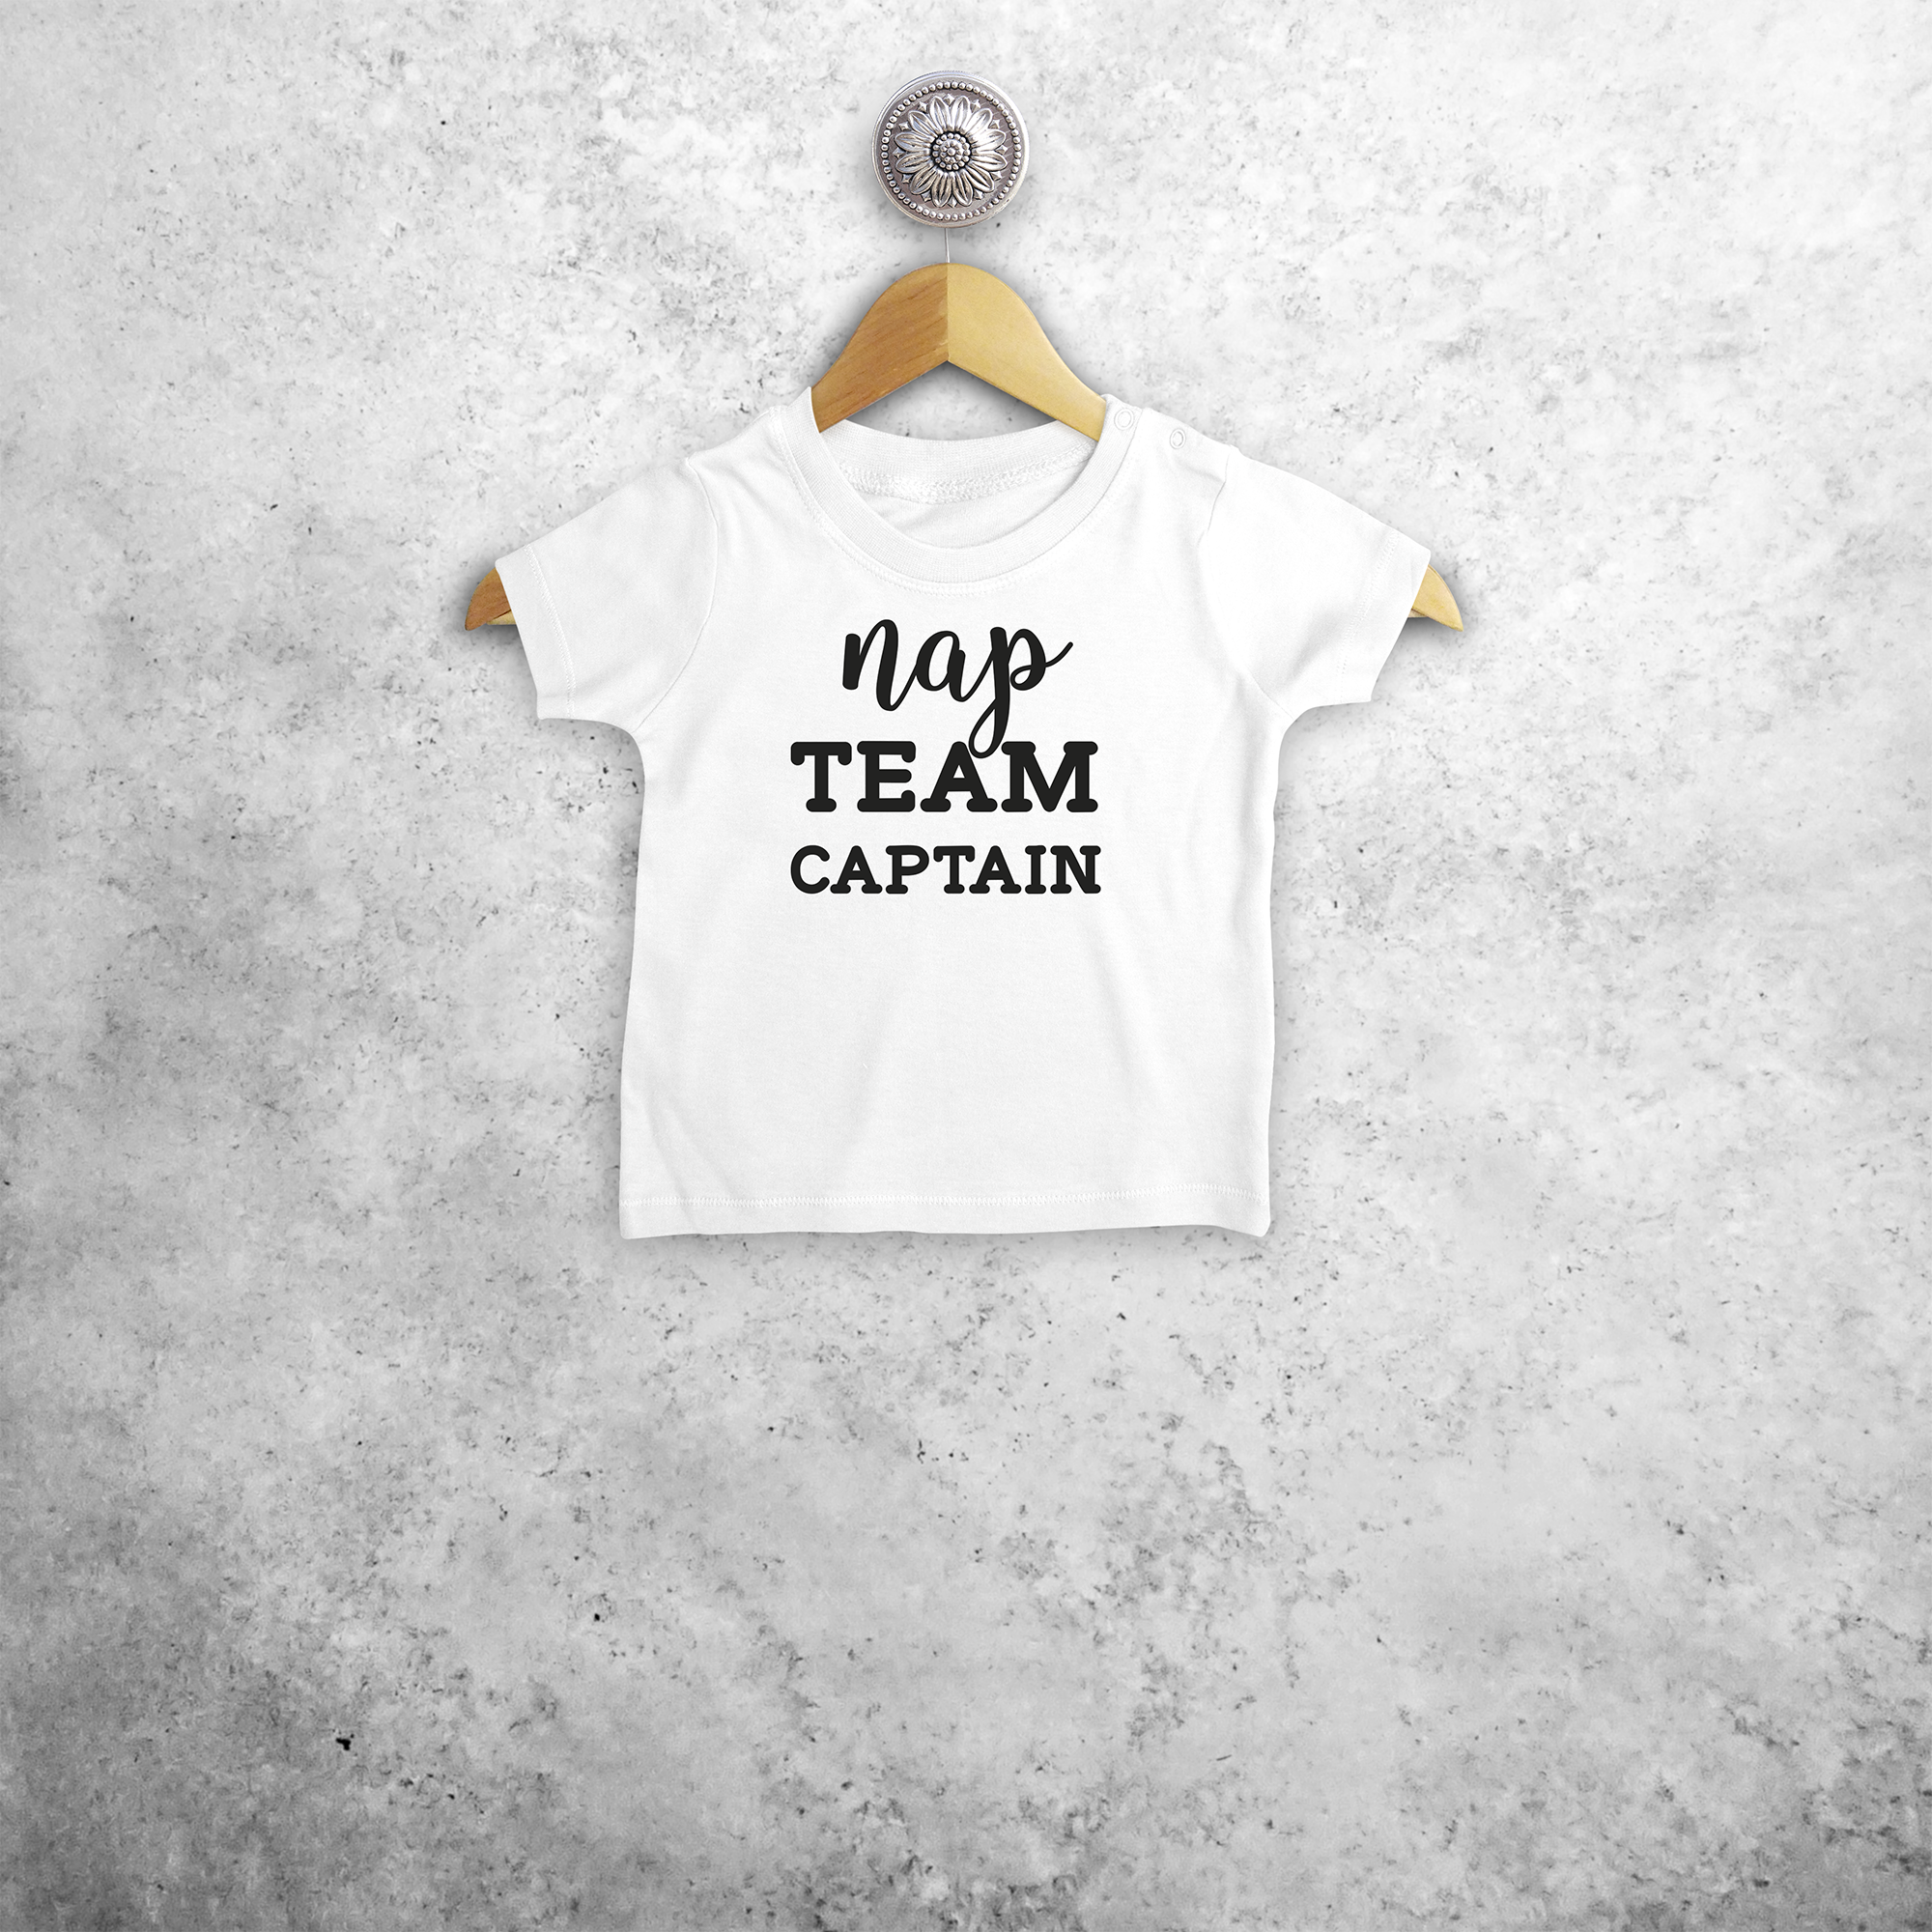 'Nap team captain' baby shirt met korte mouwen